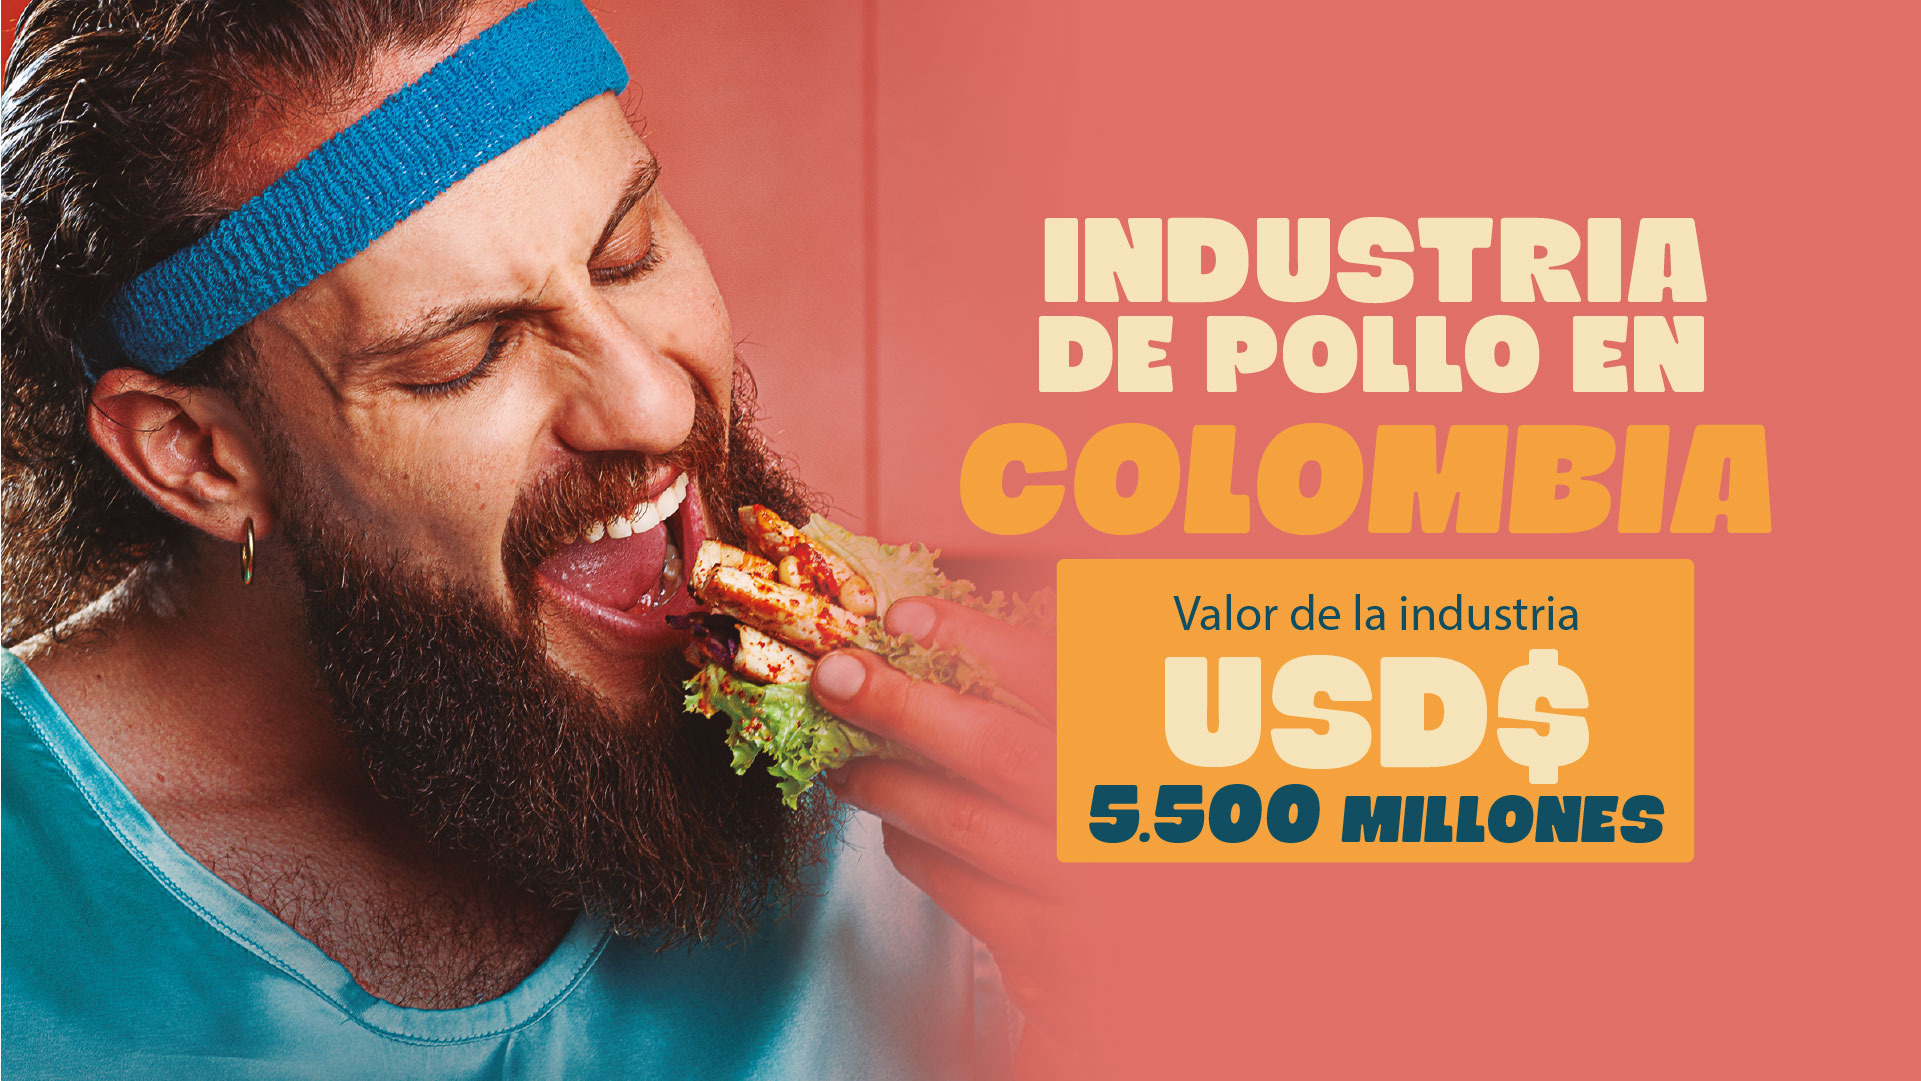 Valor de la industria de pollo en Colombia 5500 millones de dólares